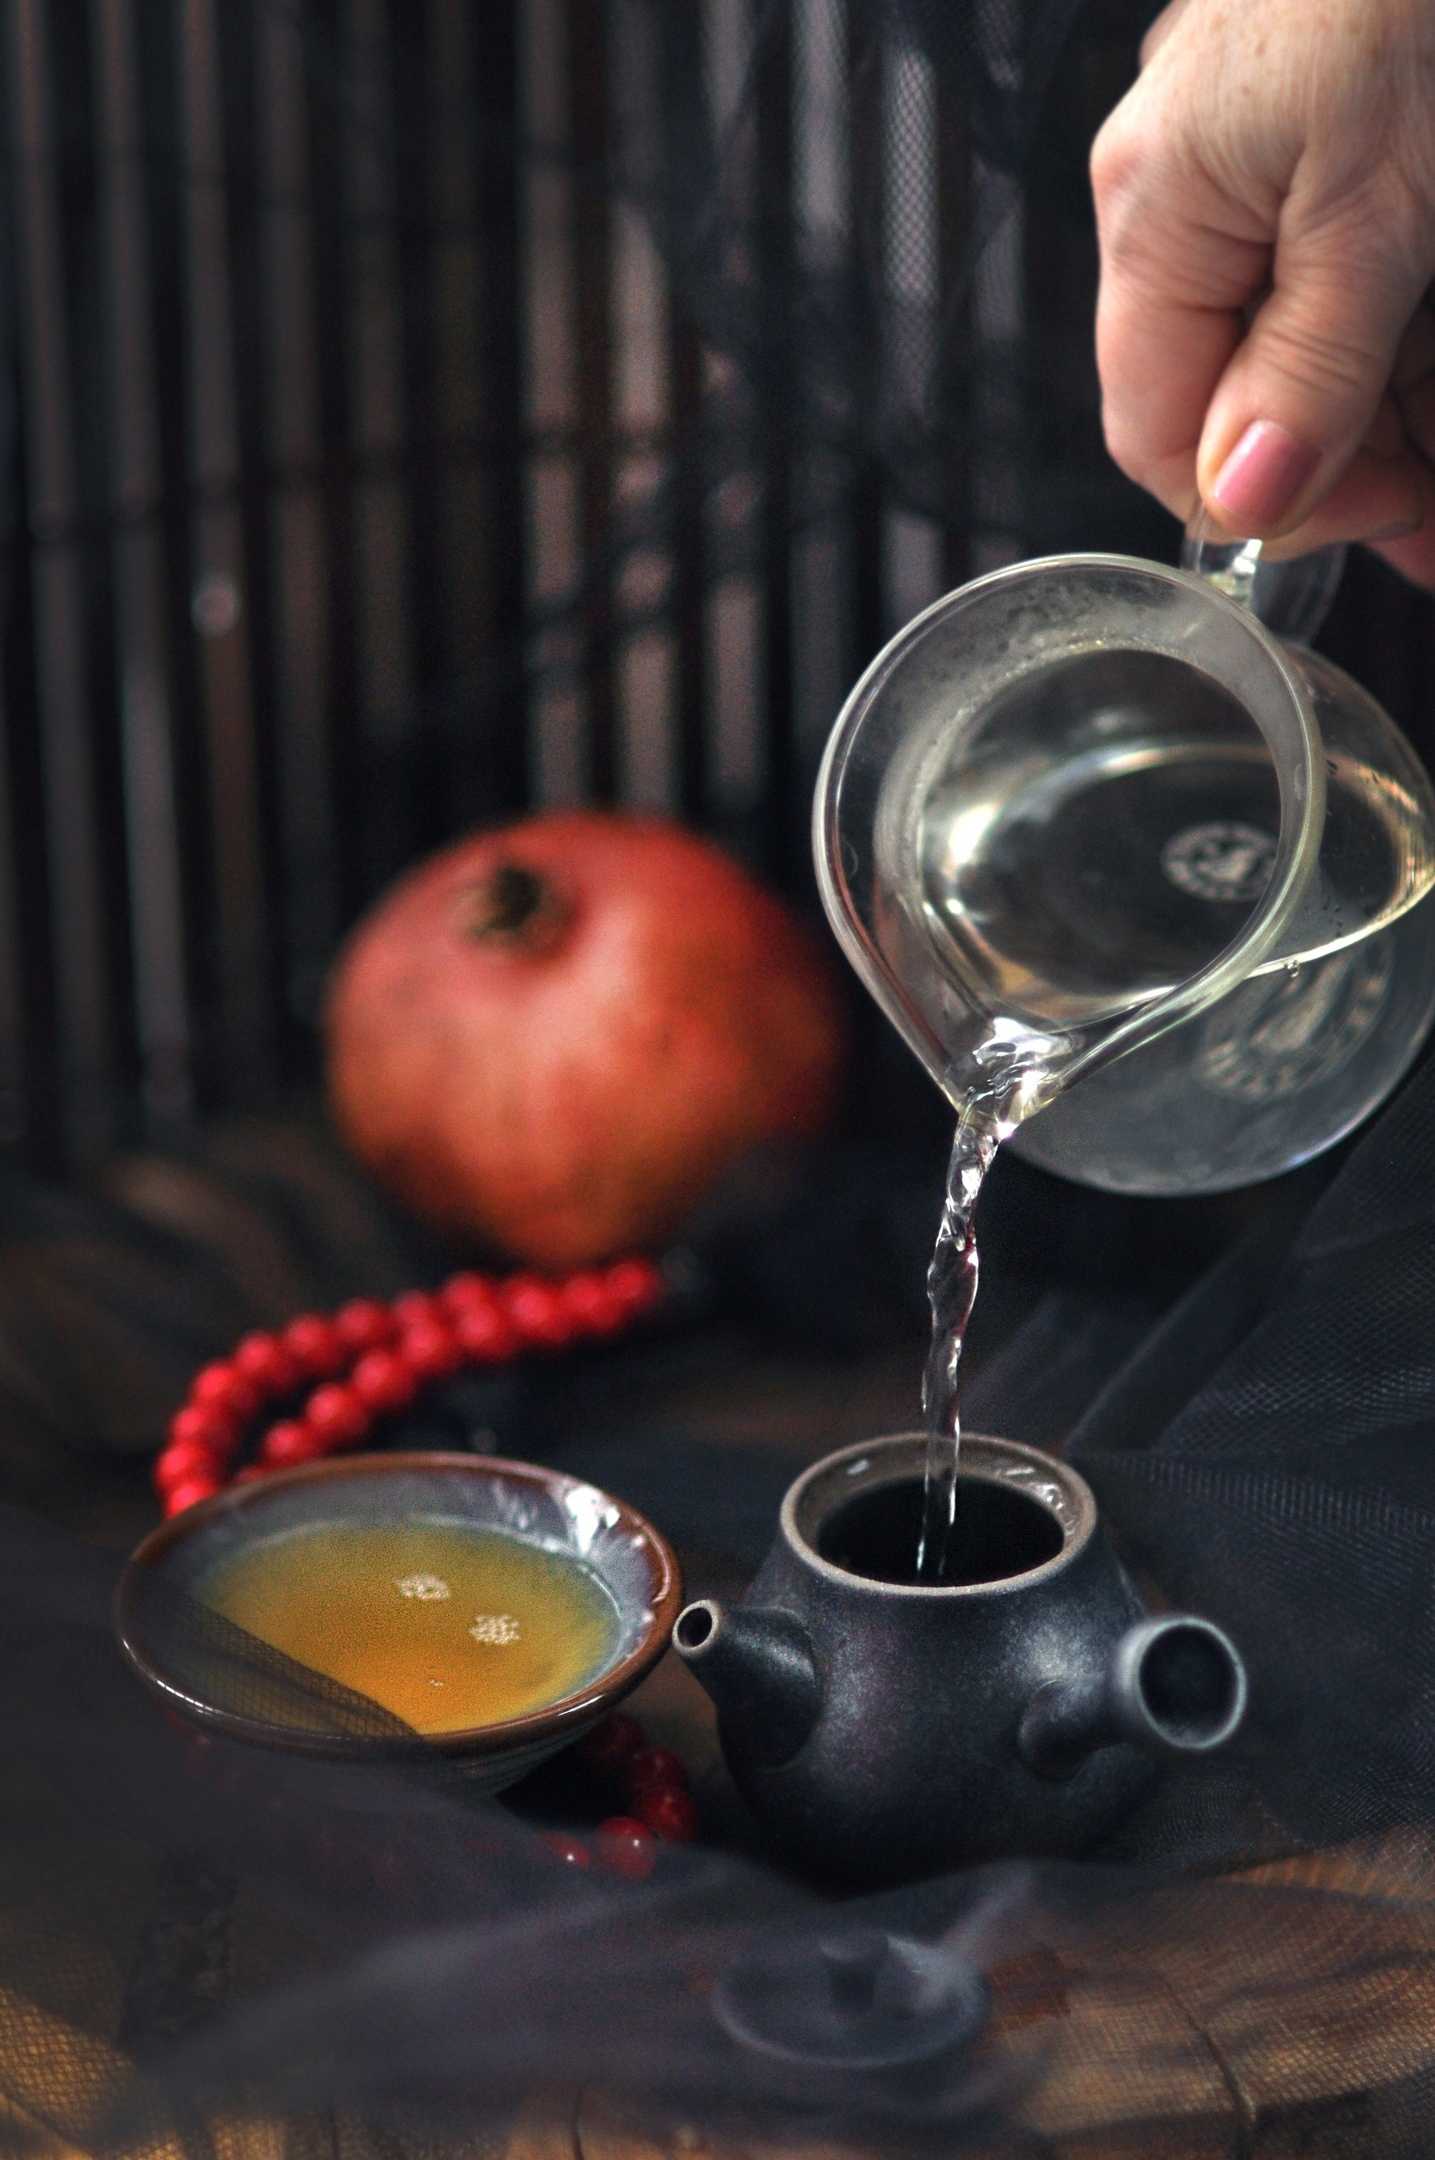 Teaworkshop. Чайник «дэ Хуа». Черный чай в чайнике. Кальян и чайник чая. Фуцзяньская керамика.